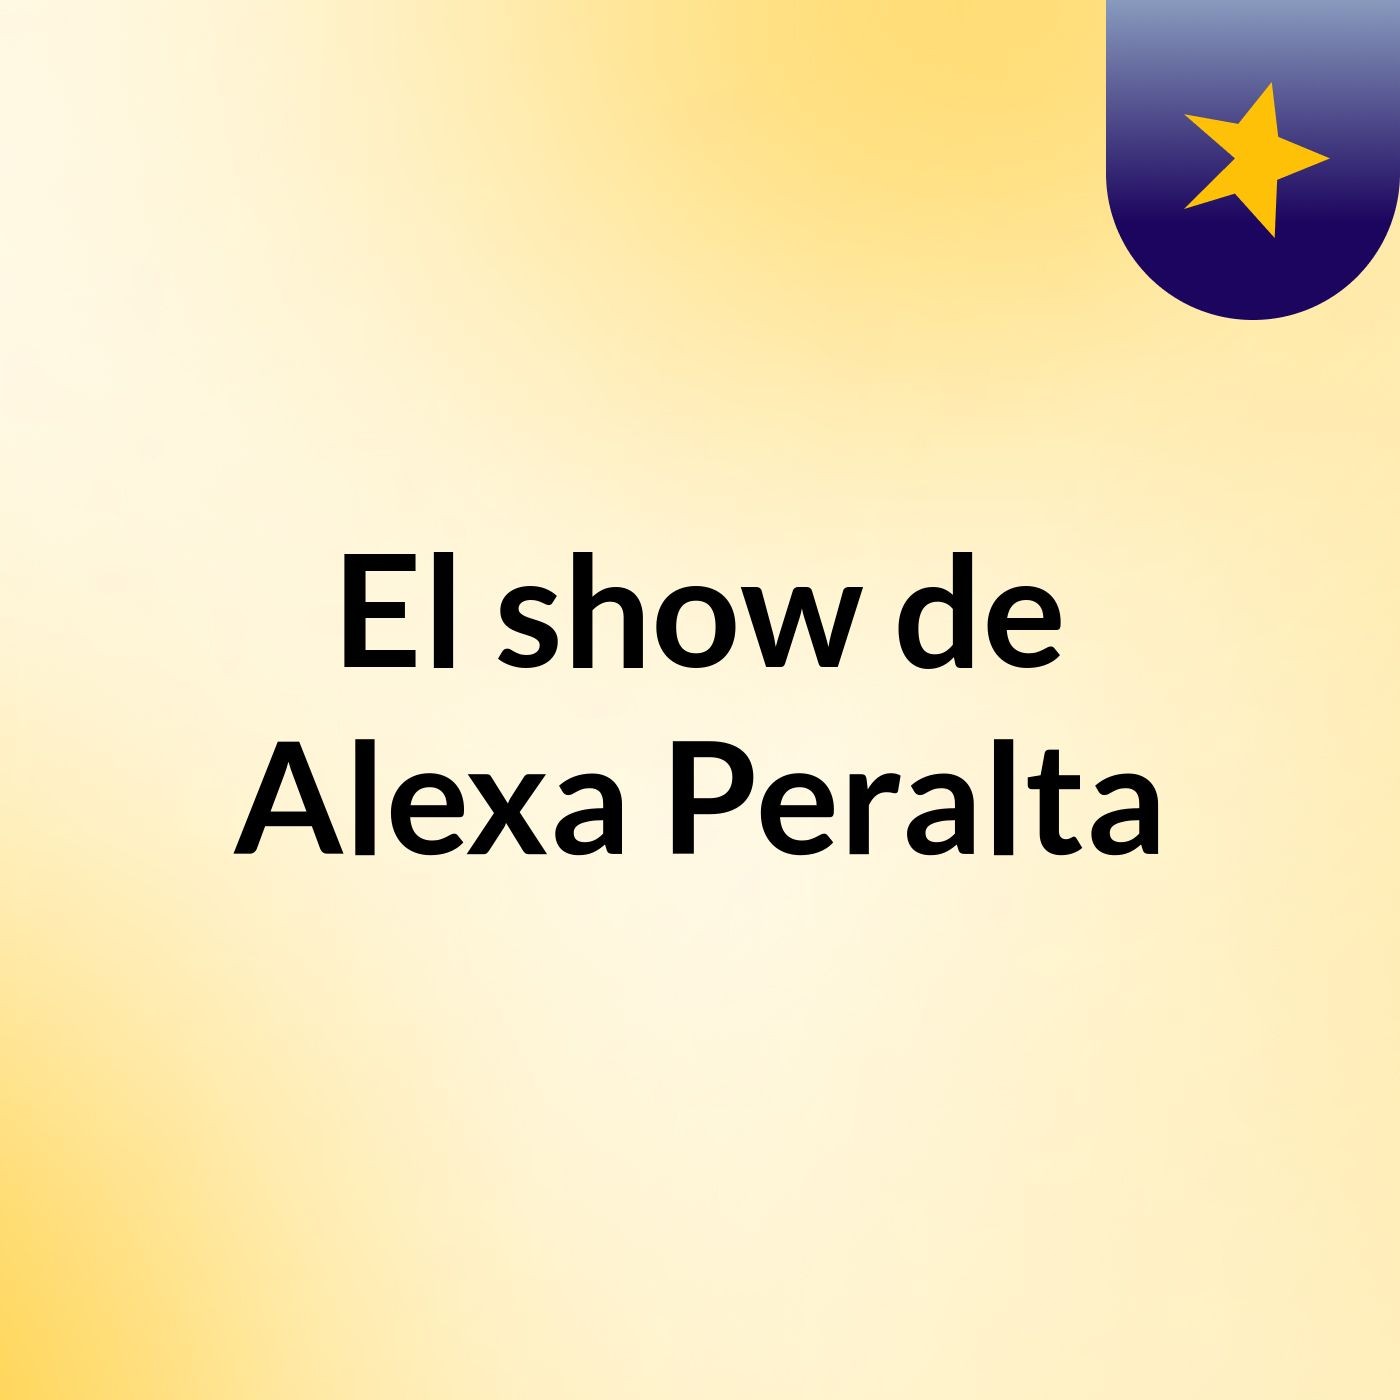 El show de Alexa Peralta